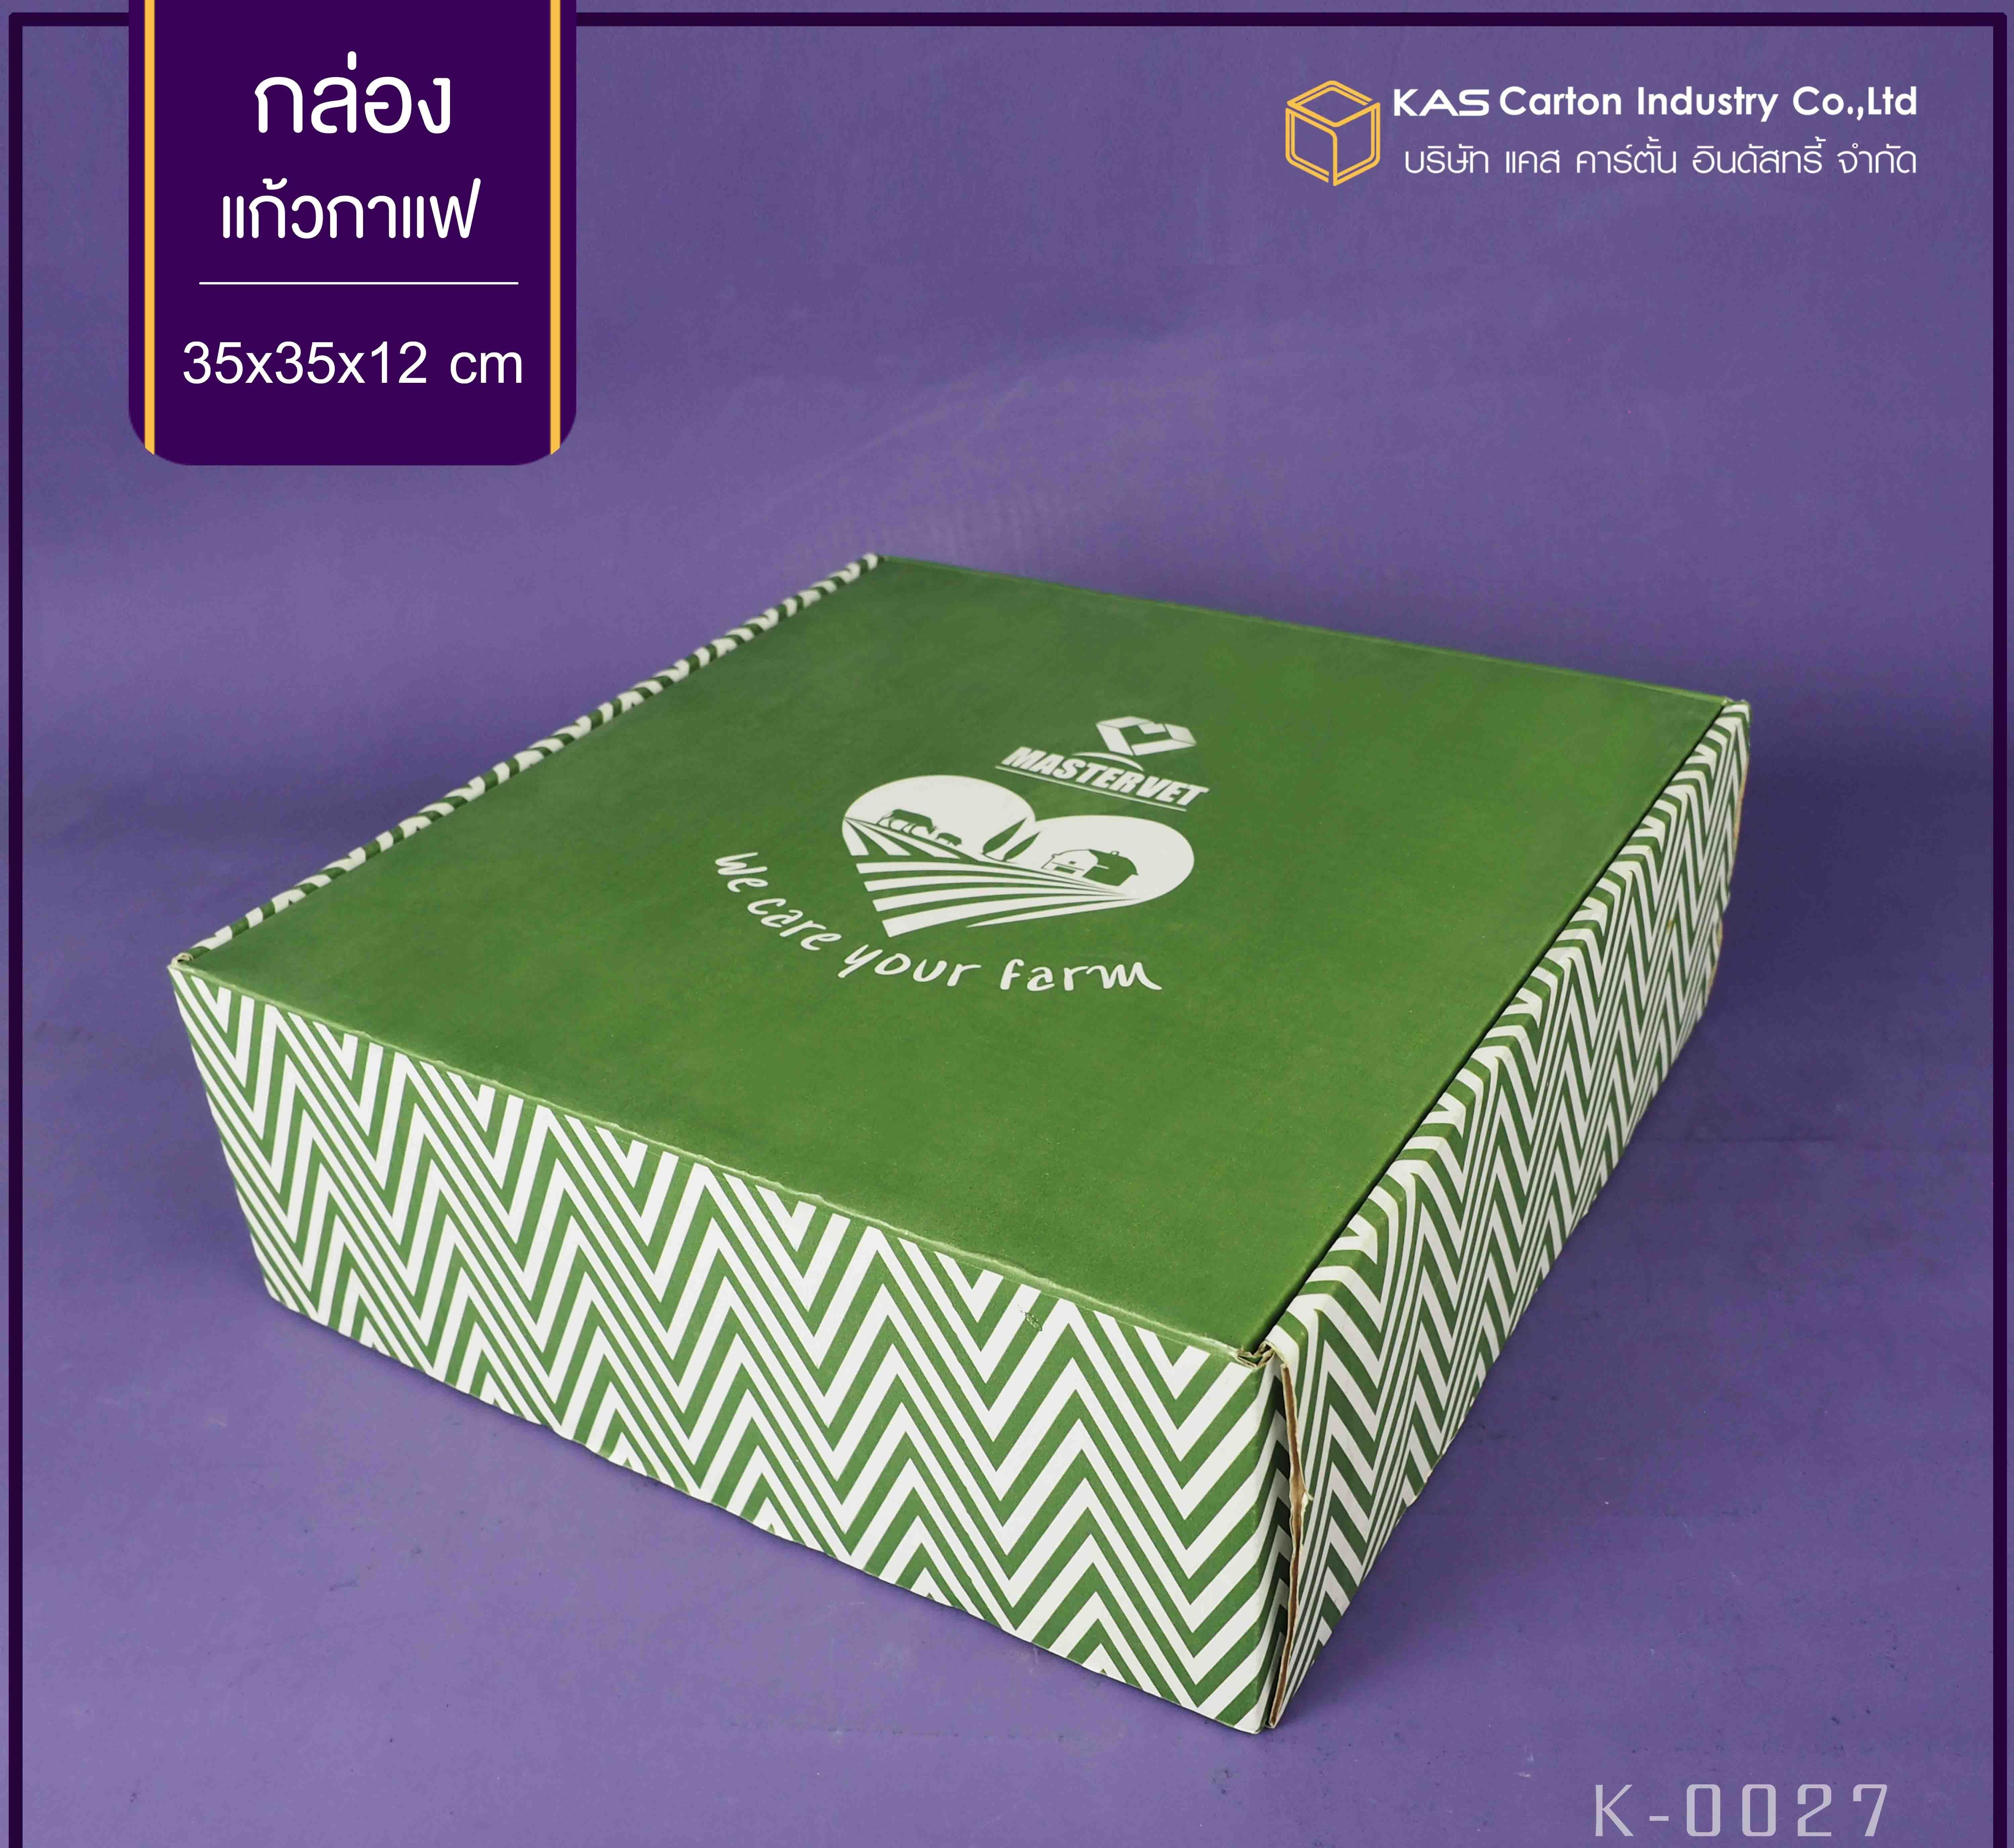 กล่องลูกฟูก สำเร็จรูป และ สั่งผลิต ตามความต้องการลูกค้า กล่องลูกฟูก SME กล่องกระดาษลูกฟูก  เพื่อใส่ แก้วกาแฟ Brand Mastervet